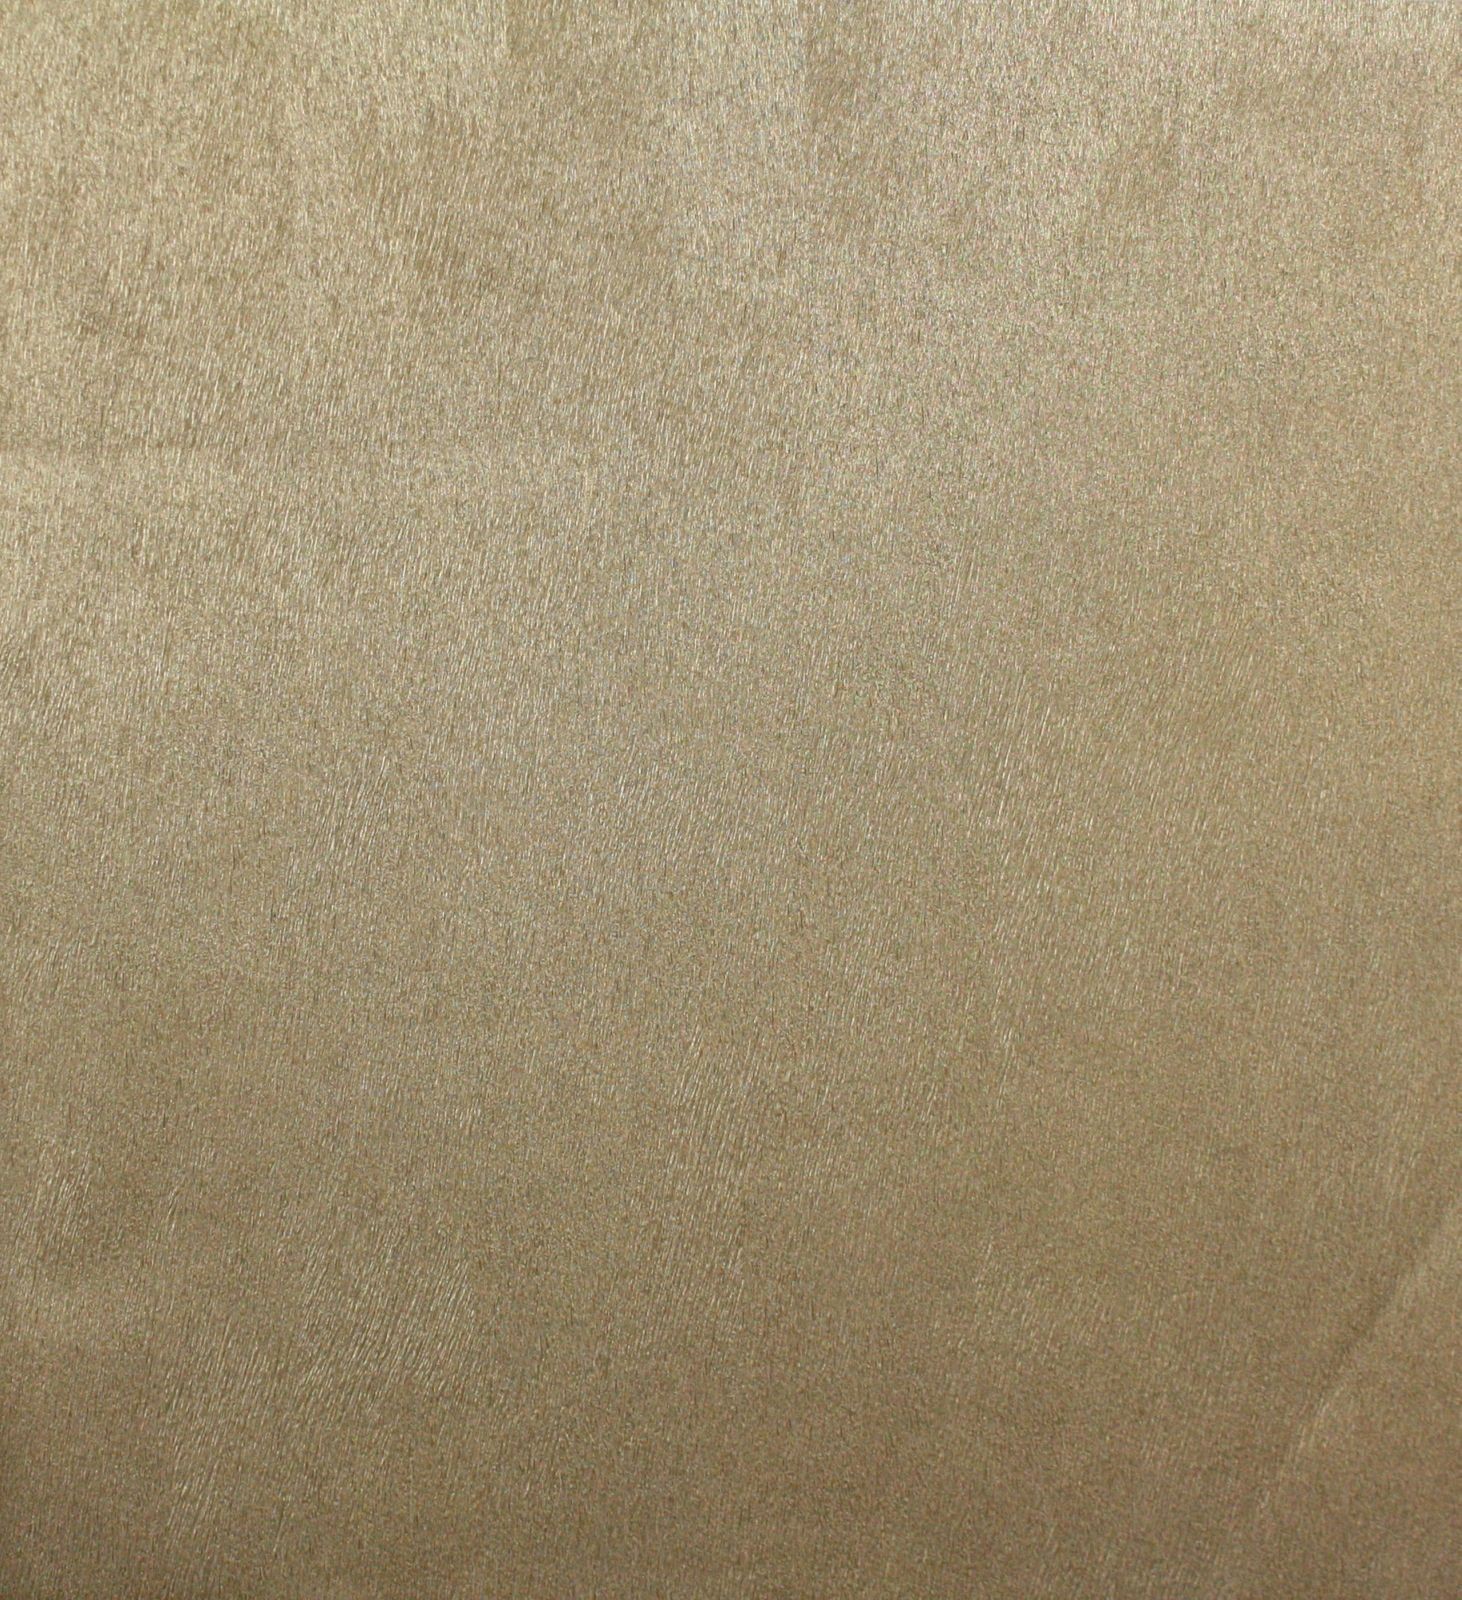 African Queen Wallpaper
 African Queen Non-woven Wallpaper - Tan - HD Wallpaper 